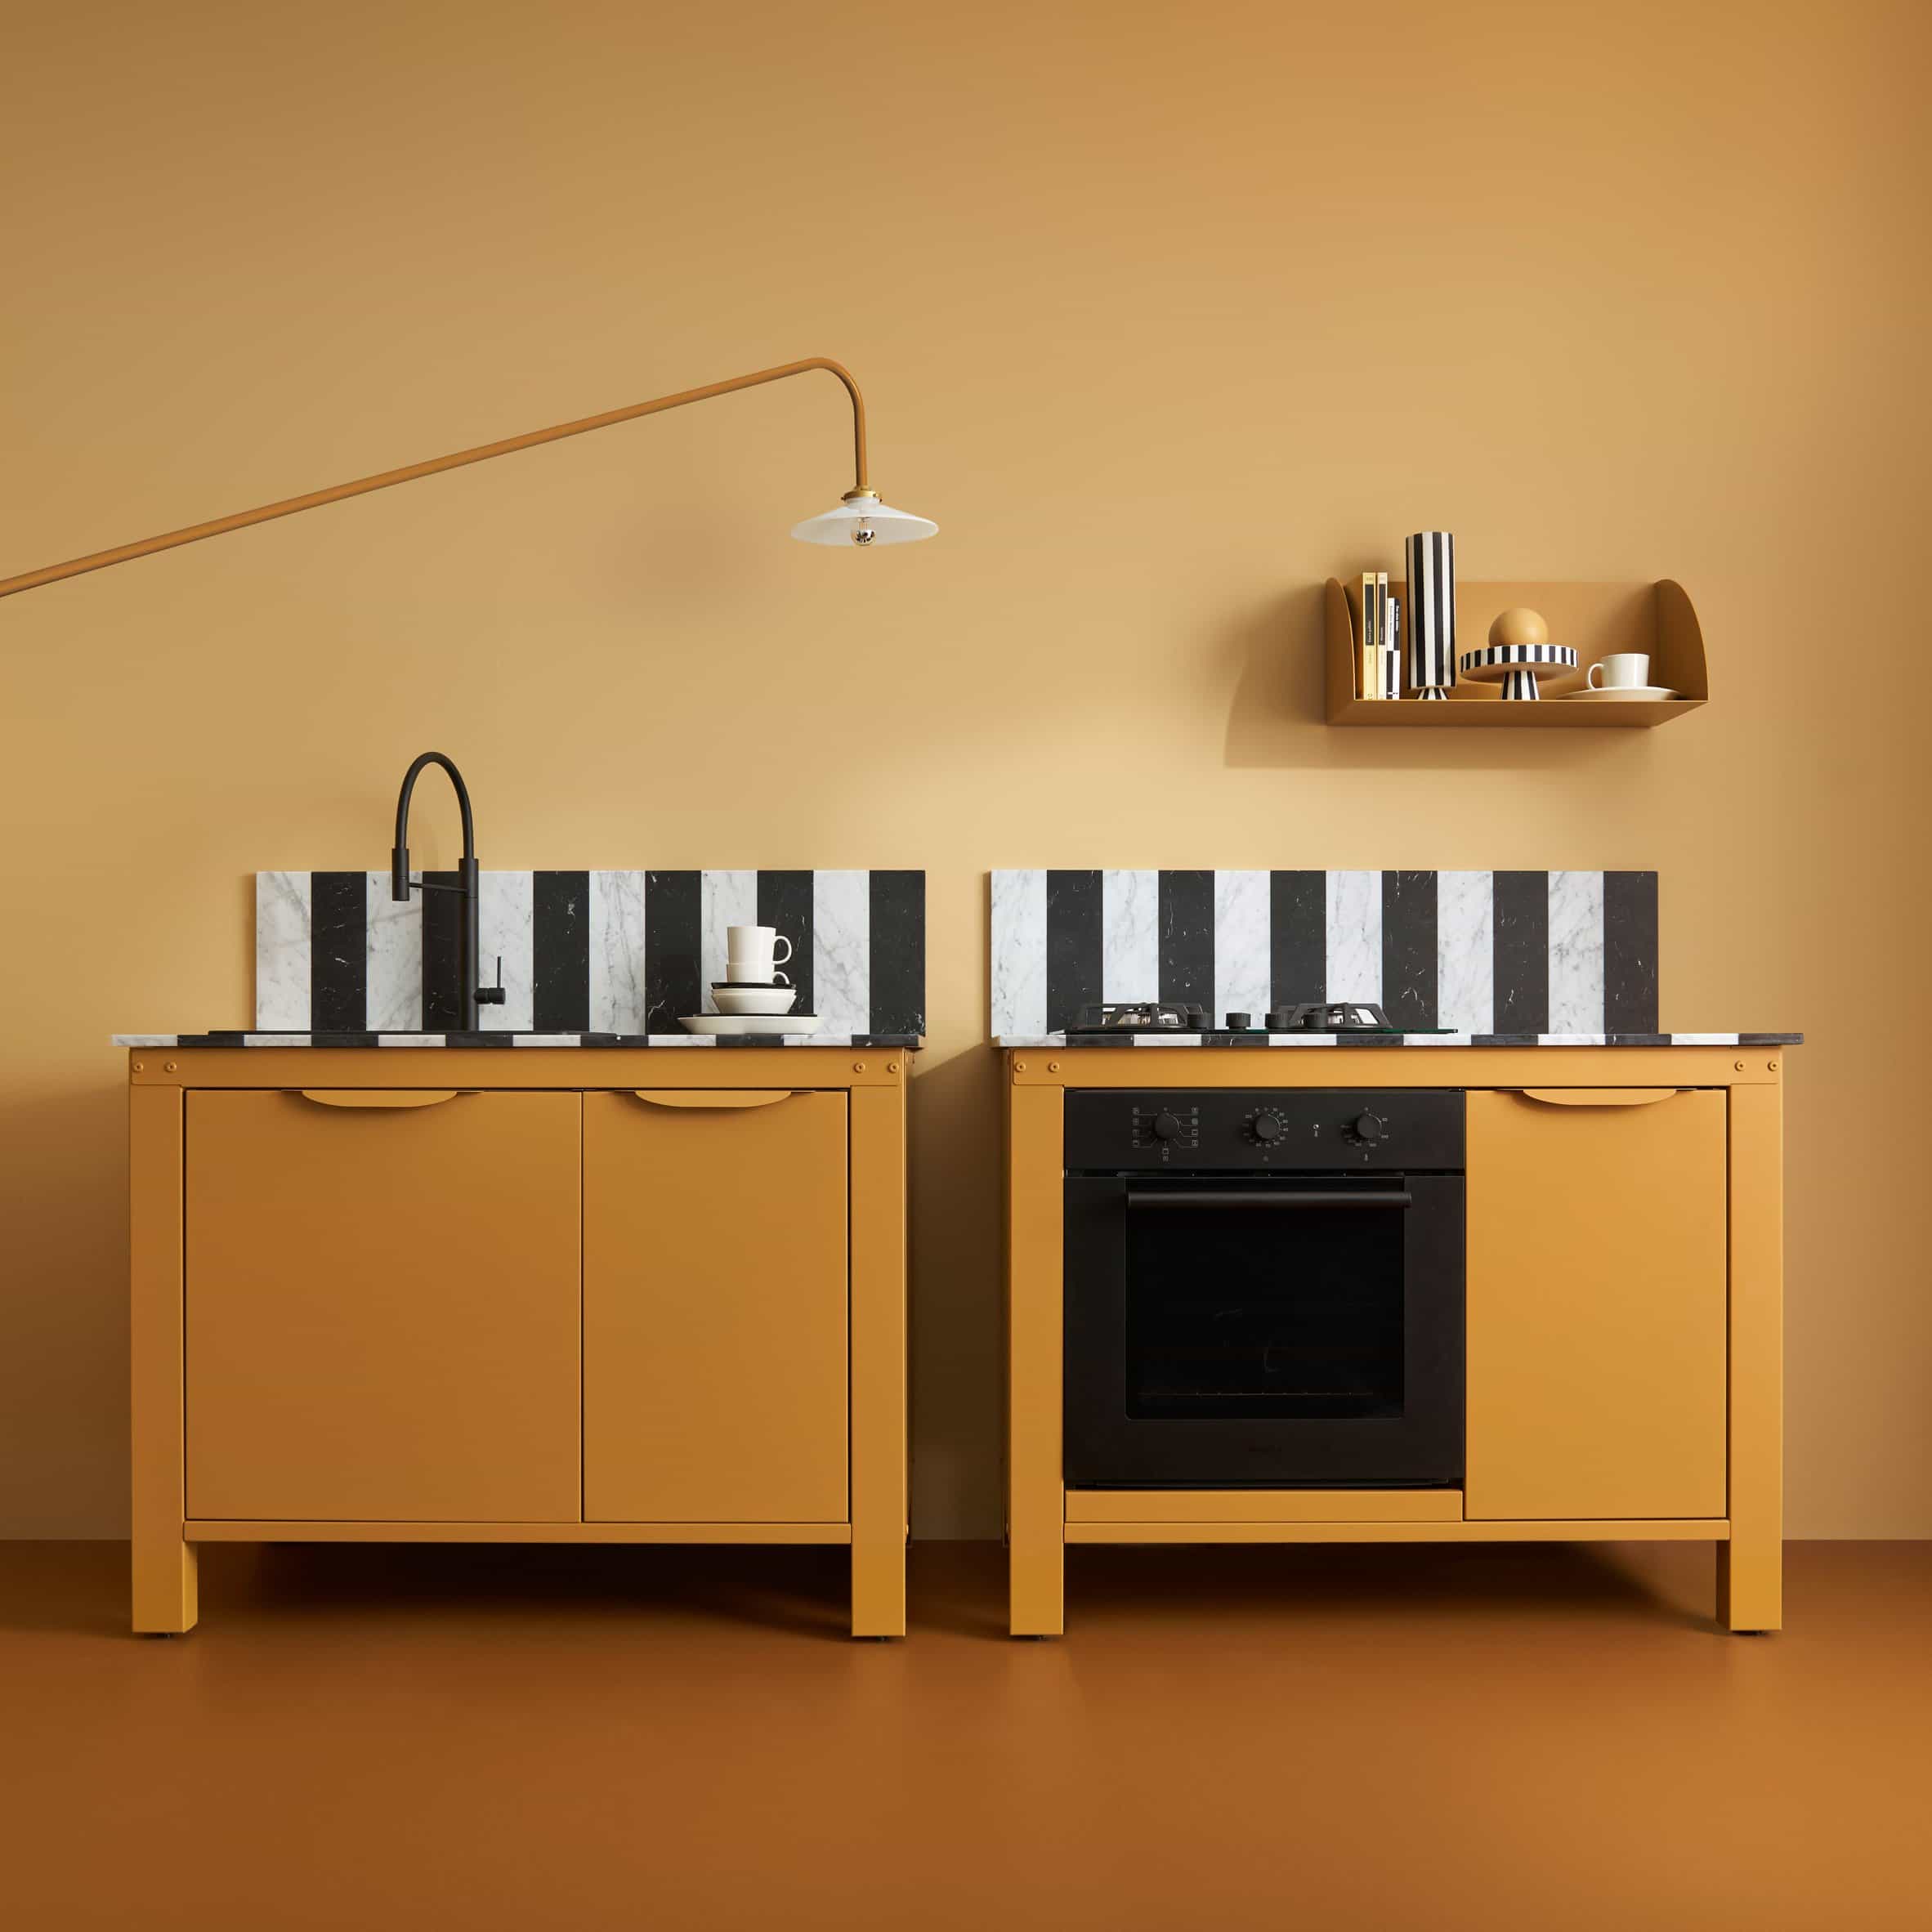 Very Simple Kitchen mezcla colores llamativos con la tradición italiana para unidades de cocina de mármol y acero inoxidable